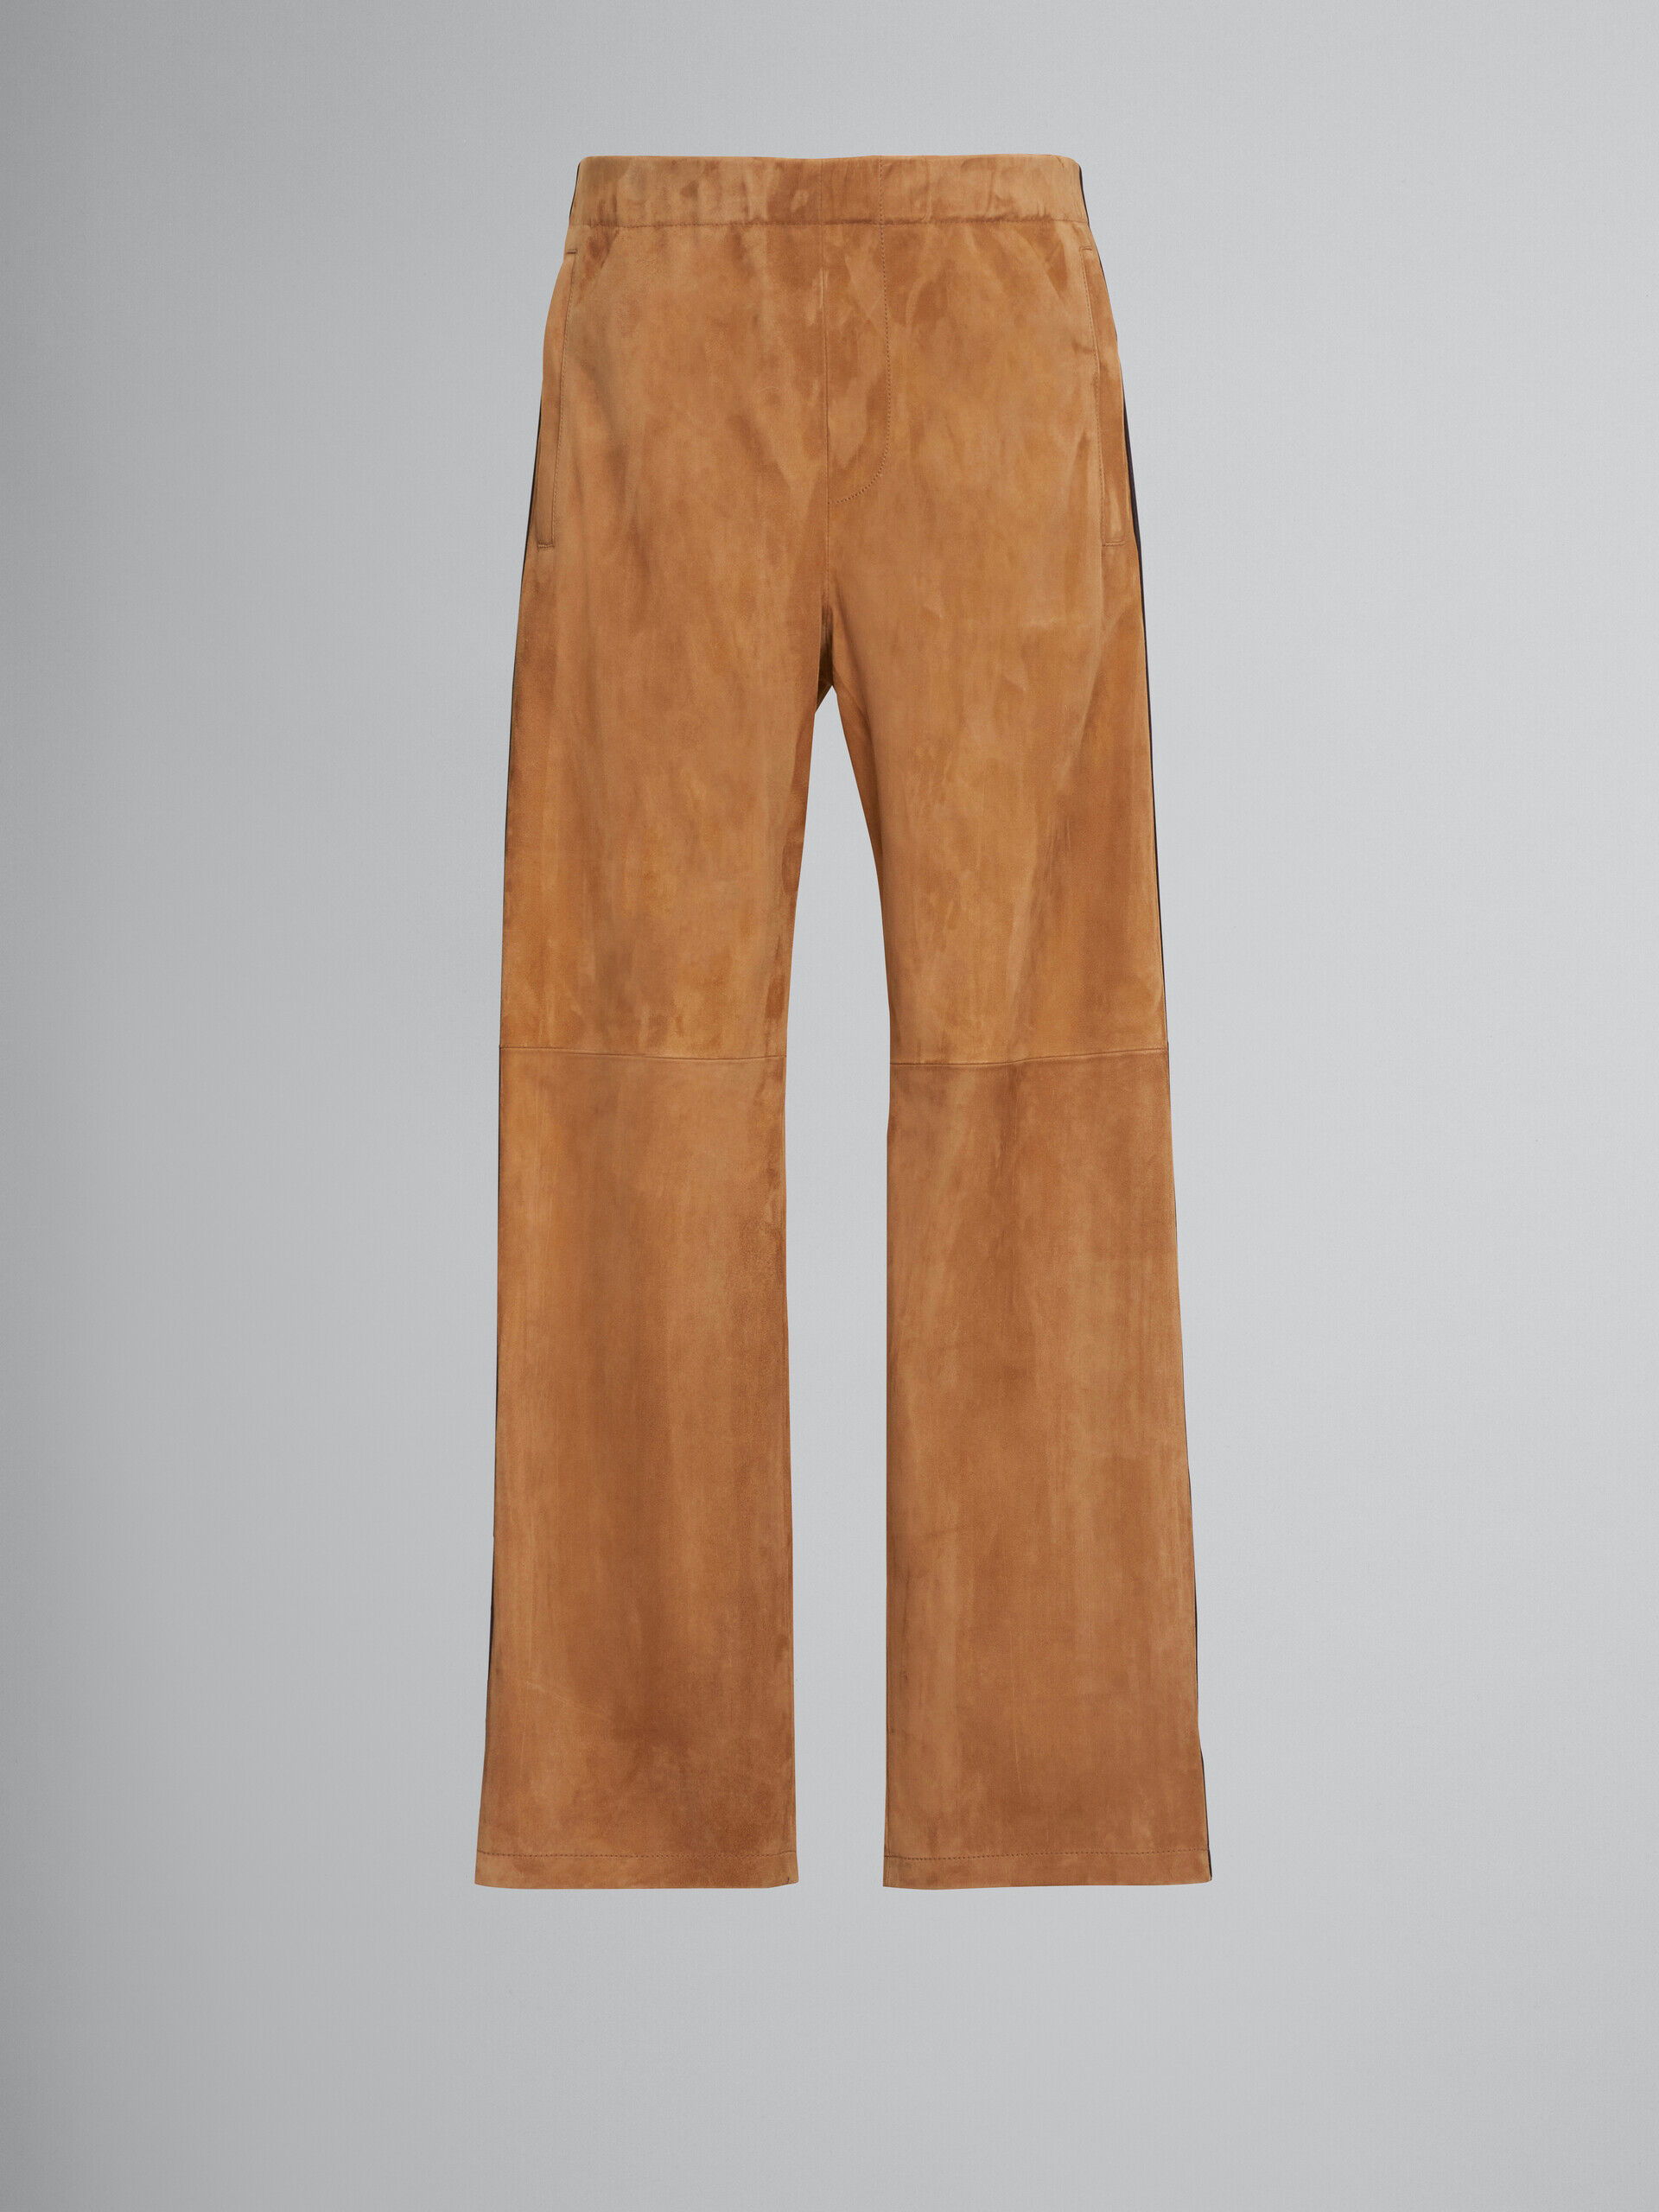 Vintage Brown Whipstitched Suede Pants 30W  Black Shag Vintage